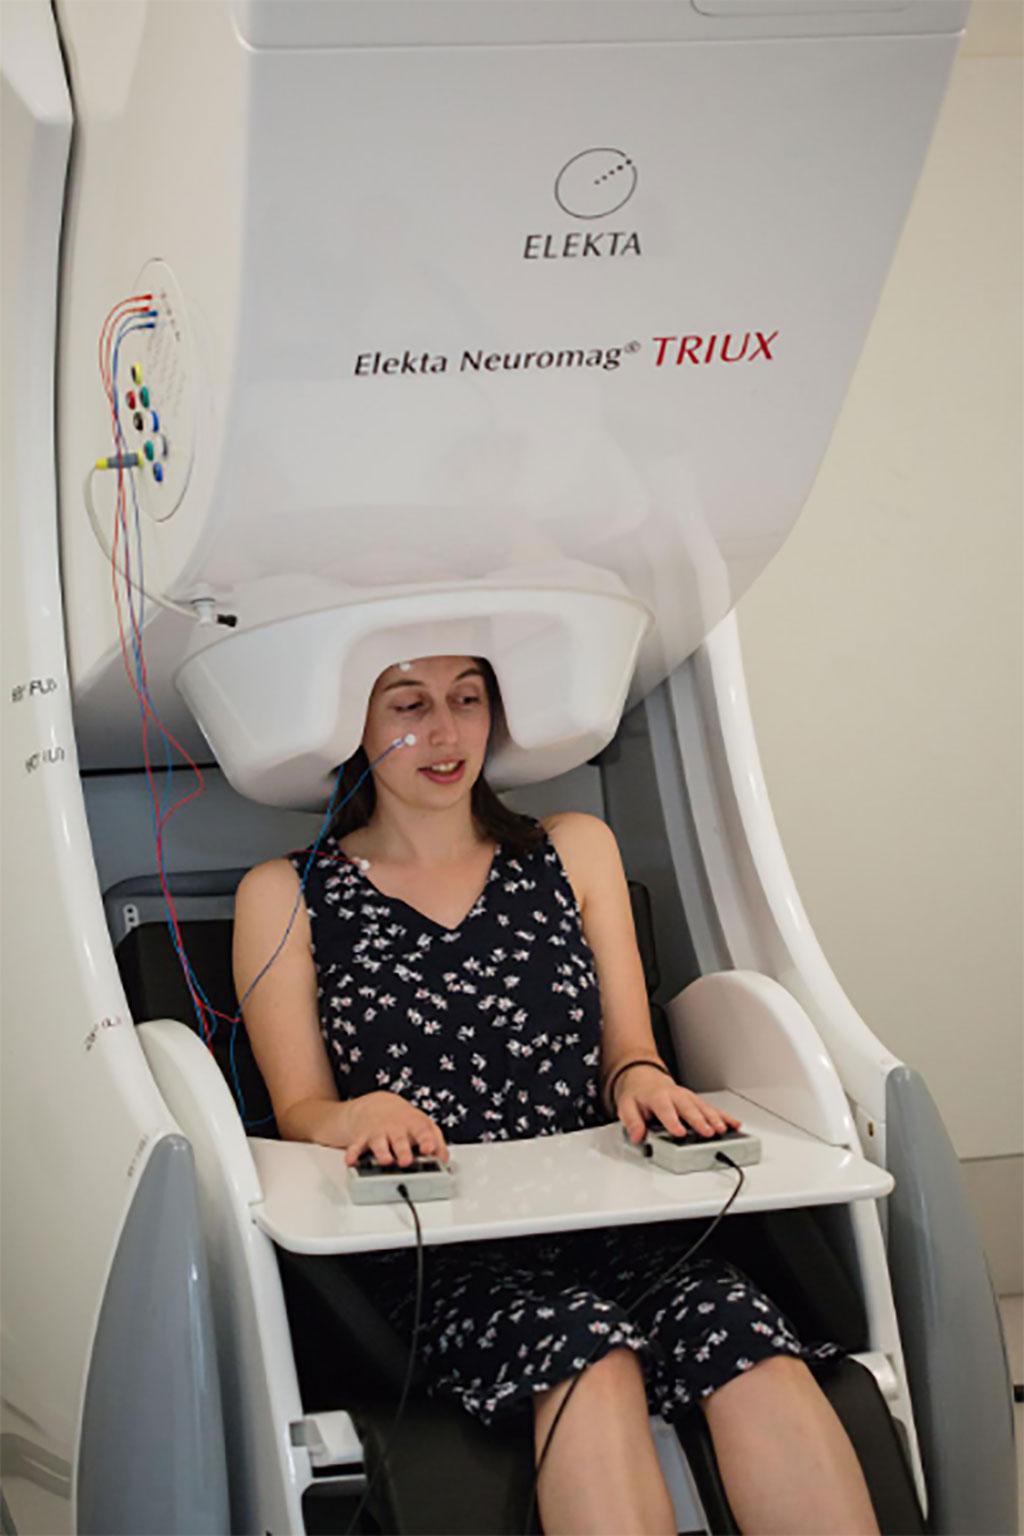 Image: Magnetoencephalographic (MEG) imaging (Photo courtesy of University of Birmingham)